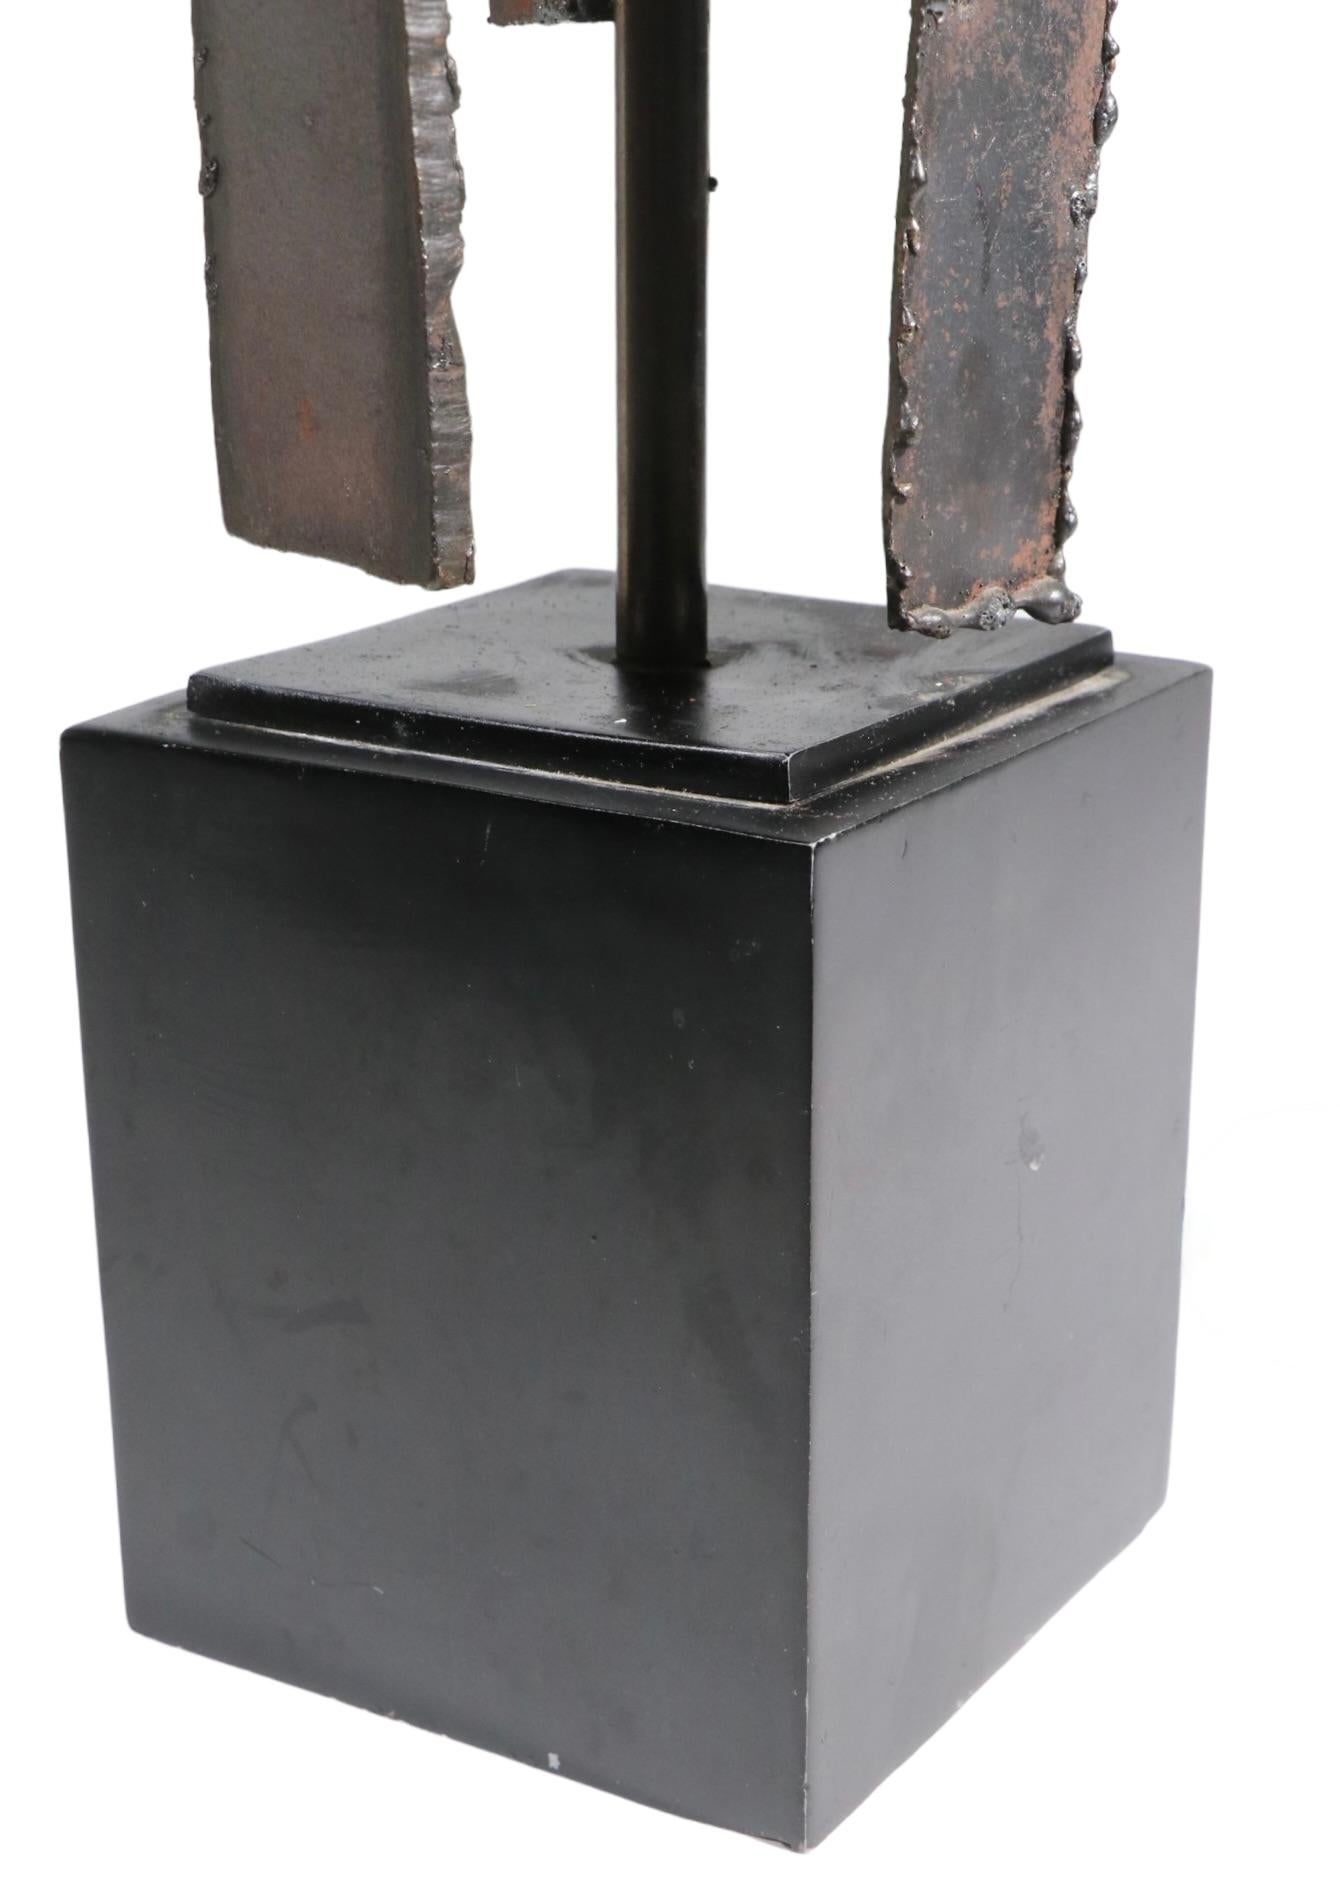 Lampe de table brutaliste iconique, par Harry Blamer, pour la Laurel Lamp Company vers les années 1970. La lampe présente un corps découpé au chalumeau à partir de segments de fer soudés, monté sur une base rectangulaire en forme de socle. Cet